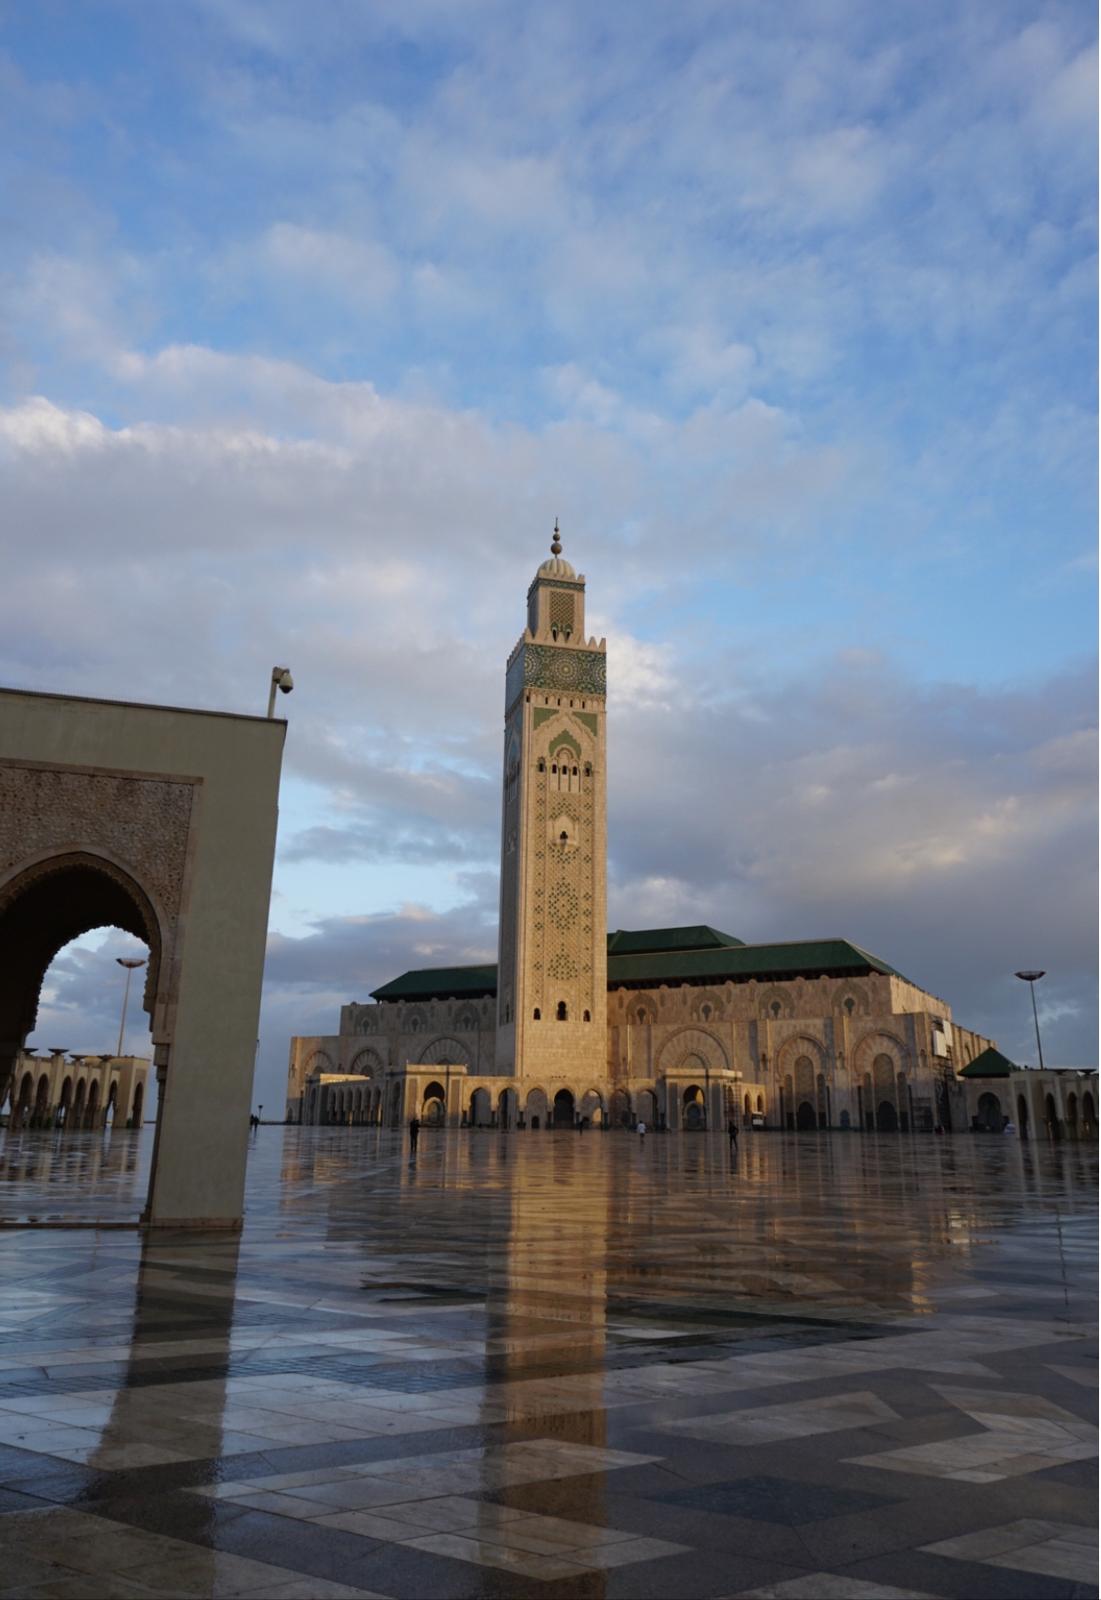 モロッコのモスク Natsu6584が投稿したフォトブック Sharee